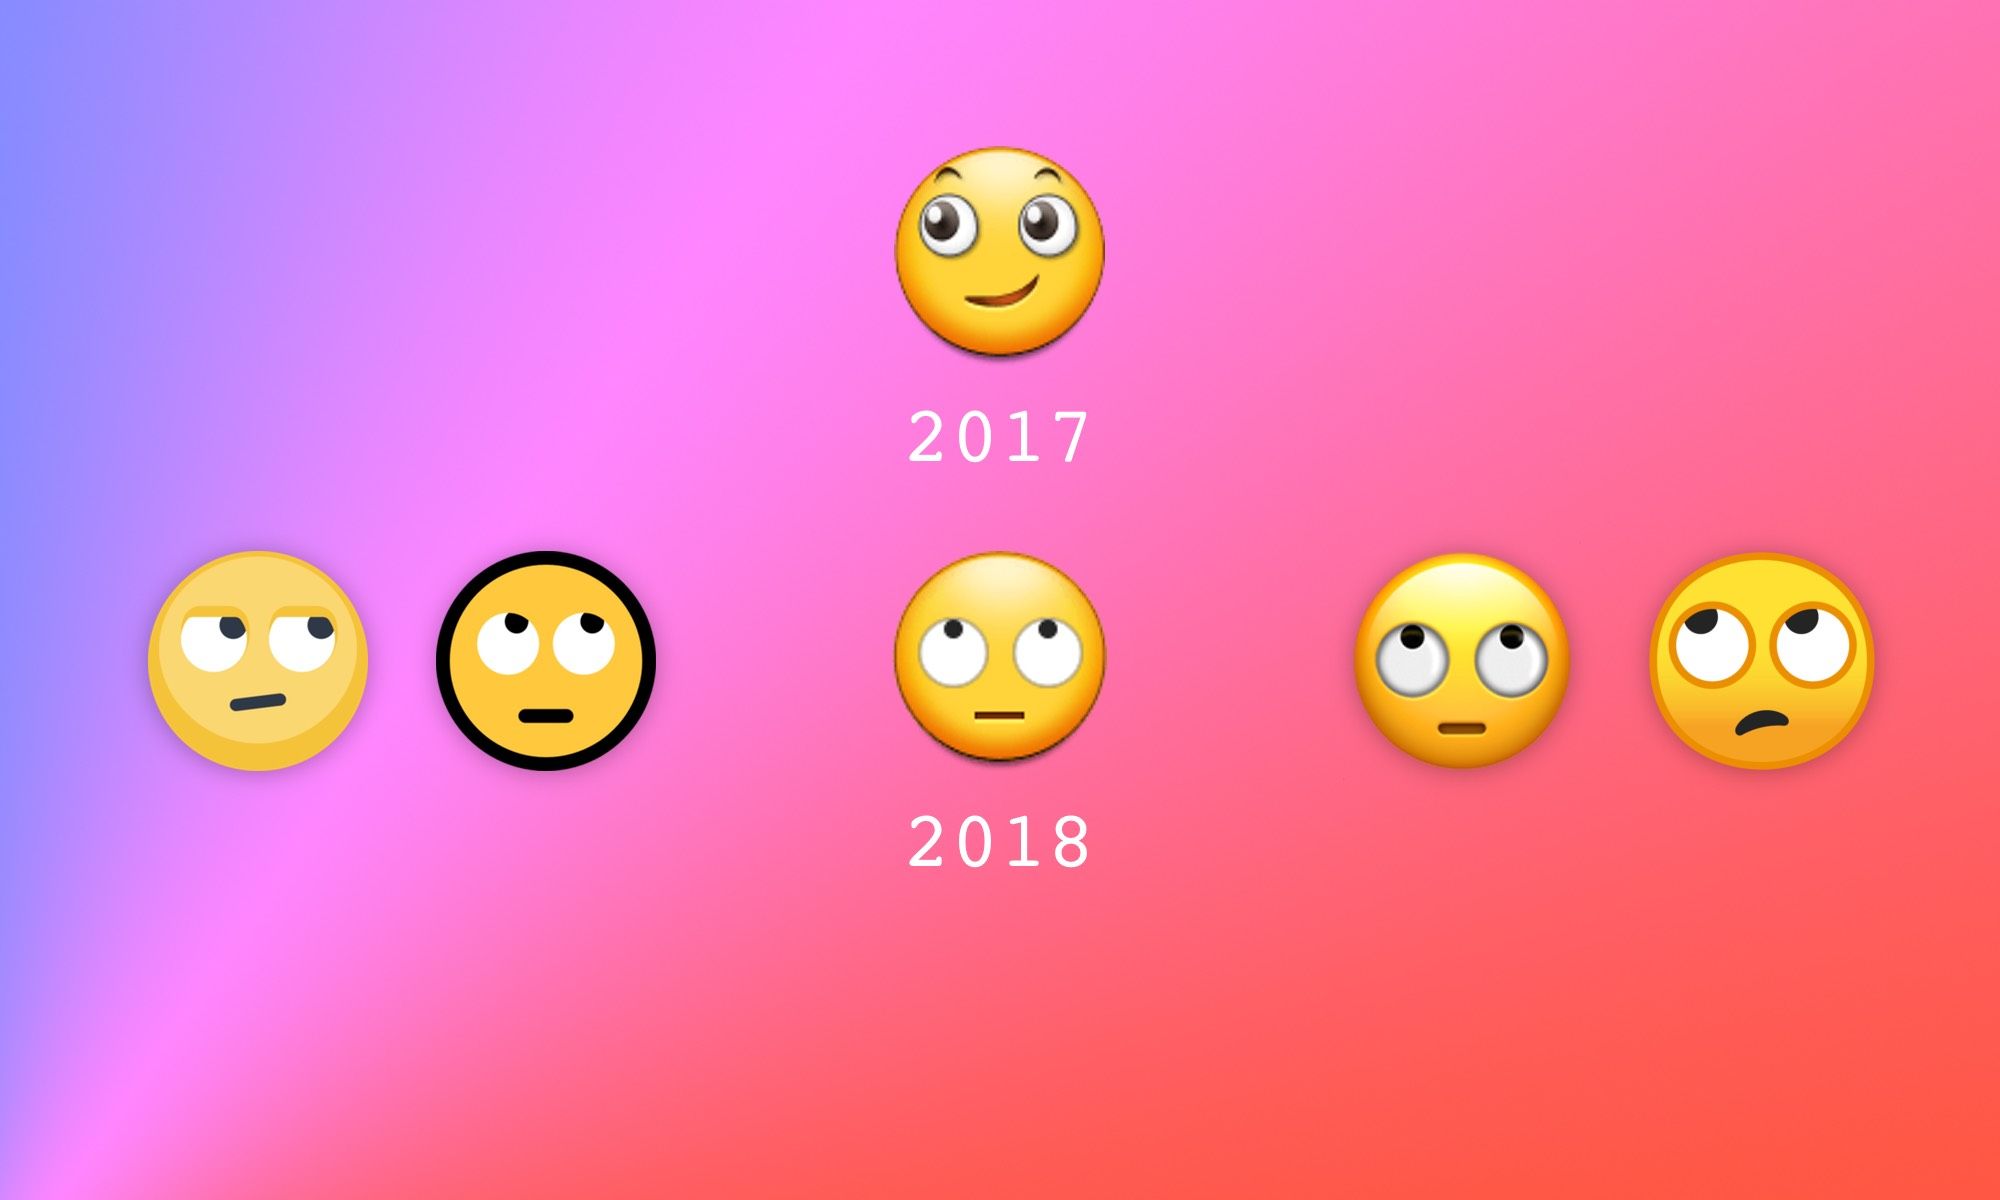 Samsung Experience 9 0 Emoji Changelog